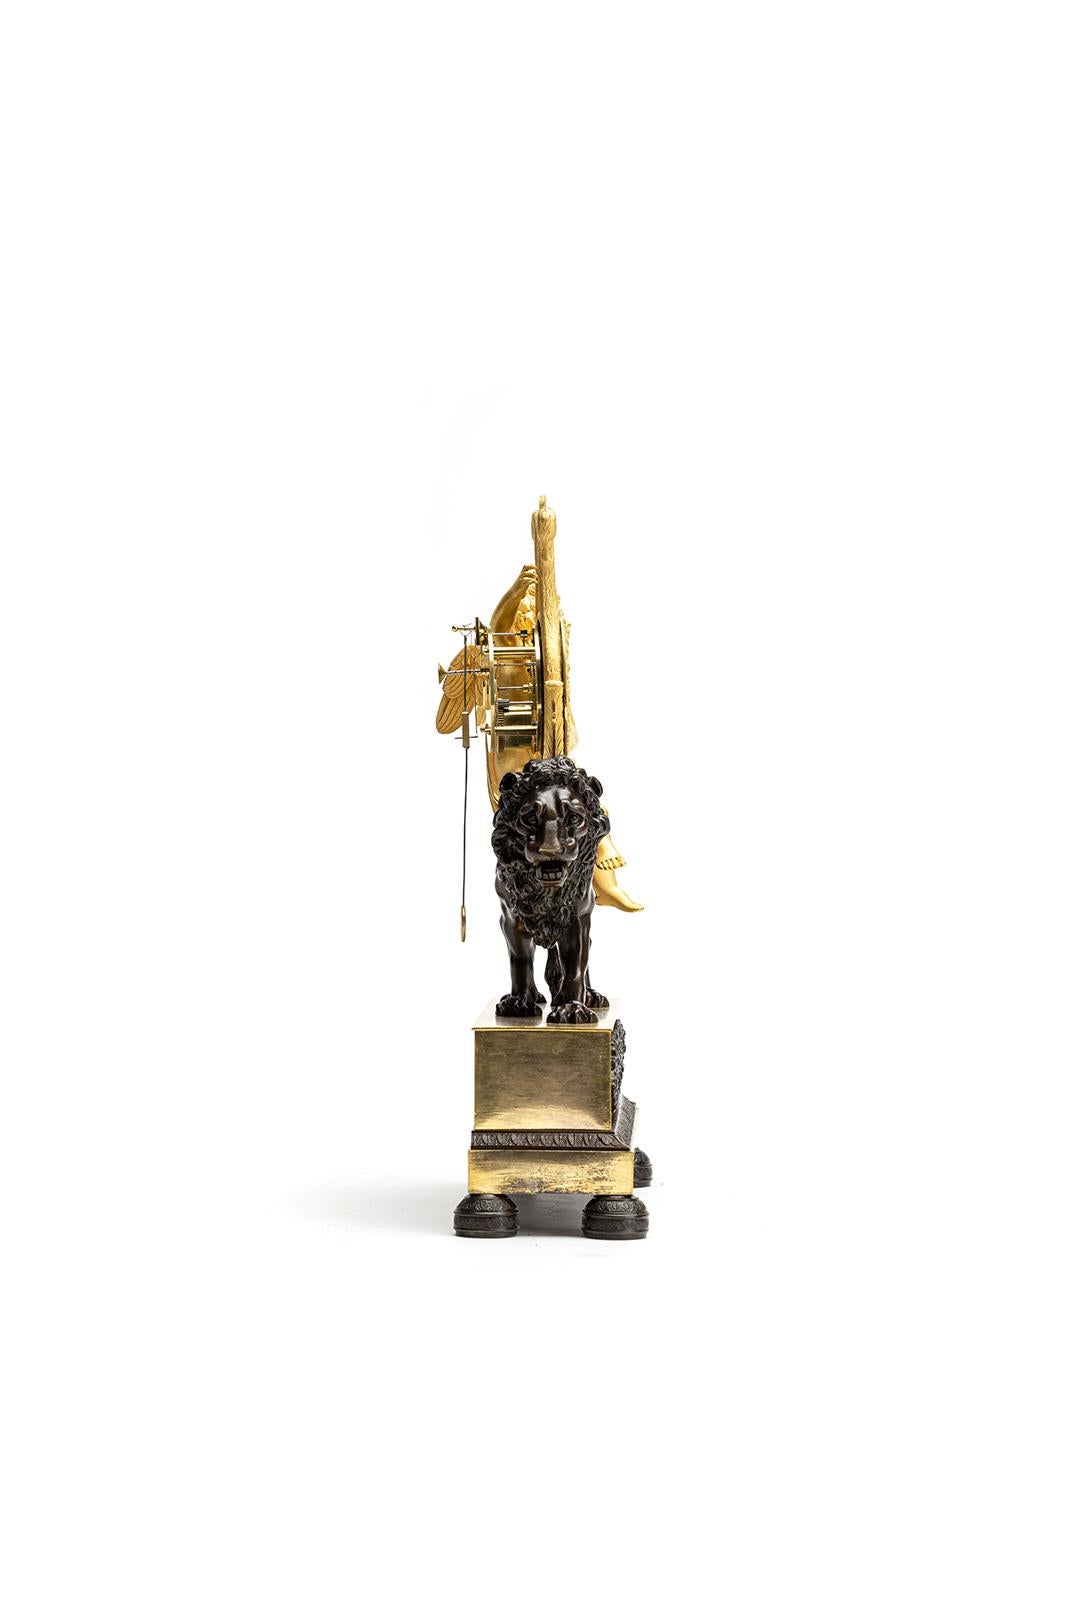 Il s'agit d'une magnifique cheminée/pendule Empire/Charles X datant d'environ 1820 qui est à la fois inhabituelle et charmante. Elle comporte une belle représentation de Cupido jouant de la harpe sur le dos d'un lion d'apparence réaliste, créant un